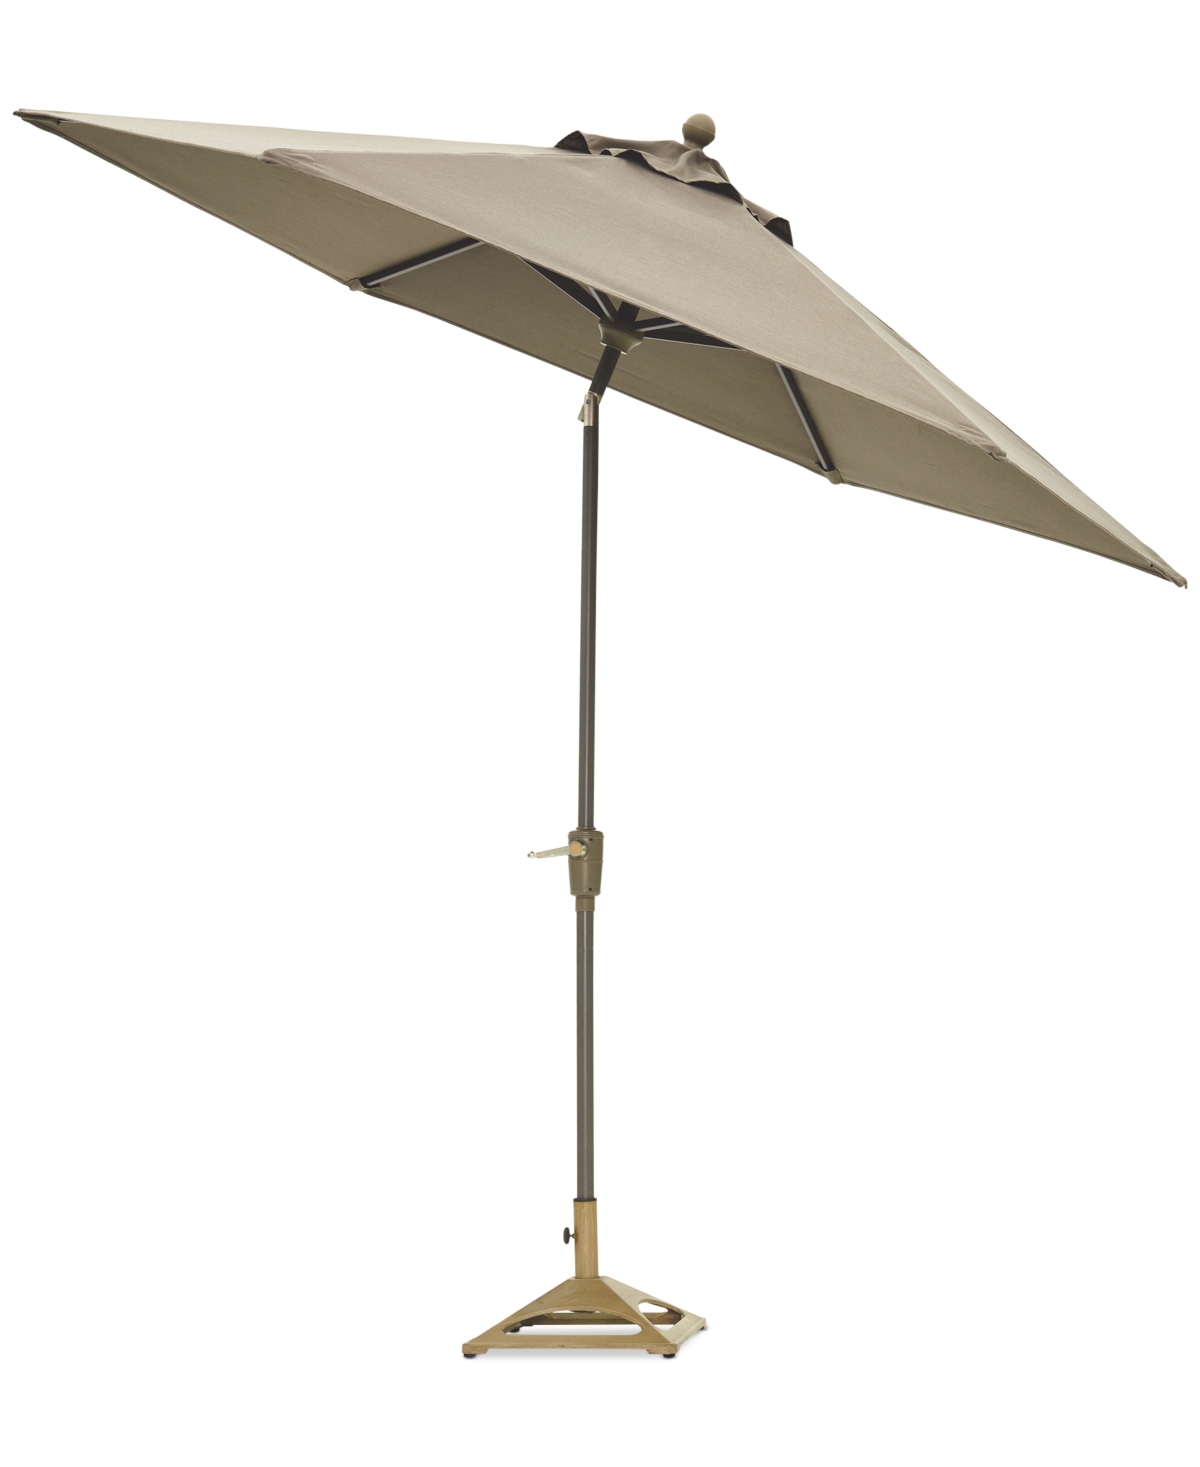 Agio Reid 9' Auto-tilt Umbrella, Created For Macy's In Solartex Bark